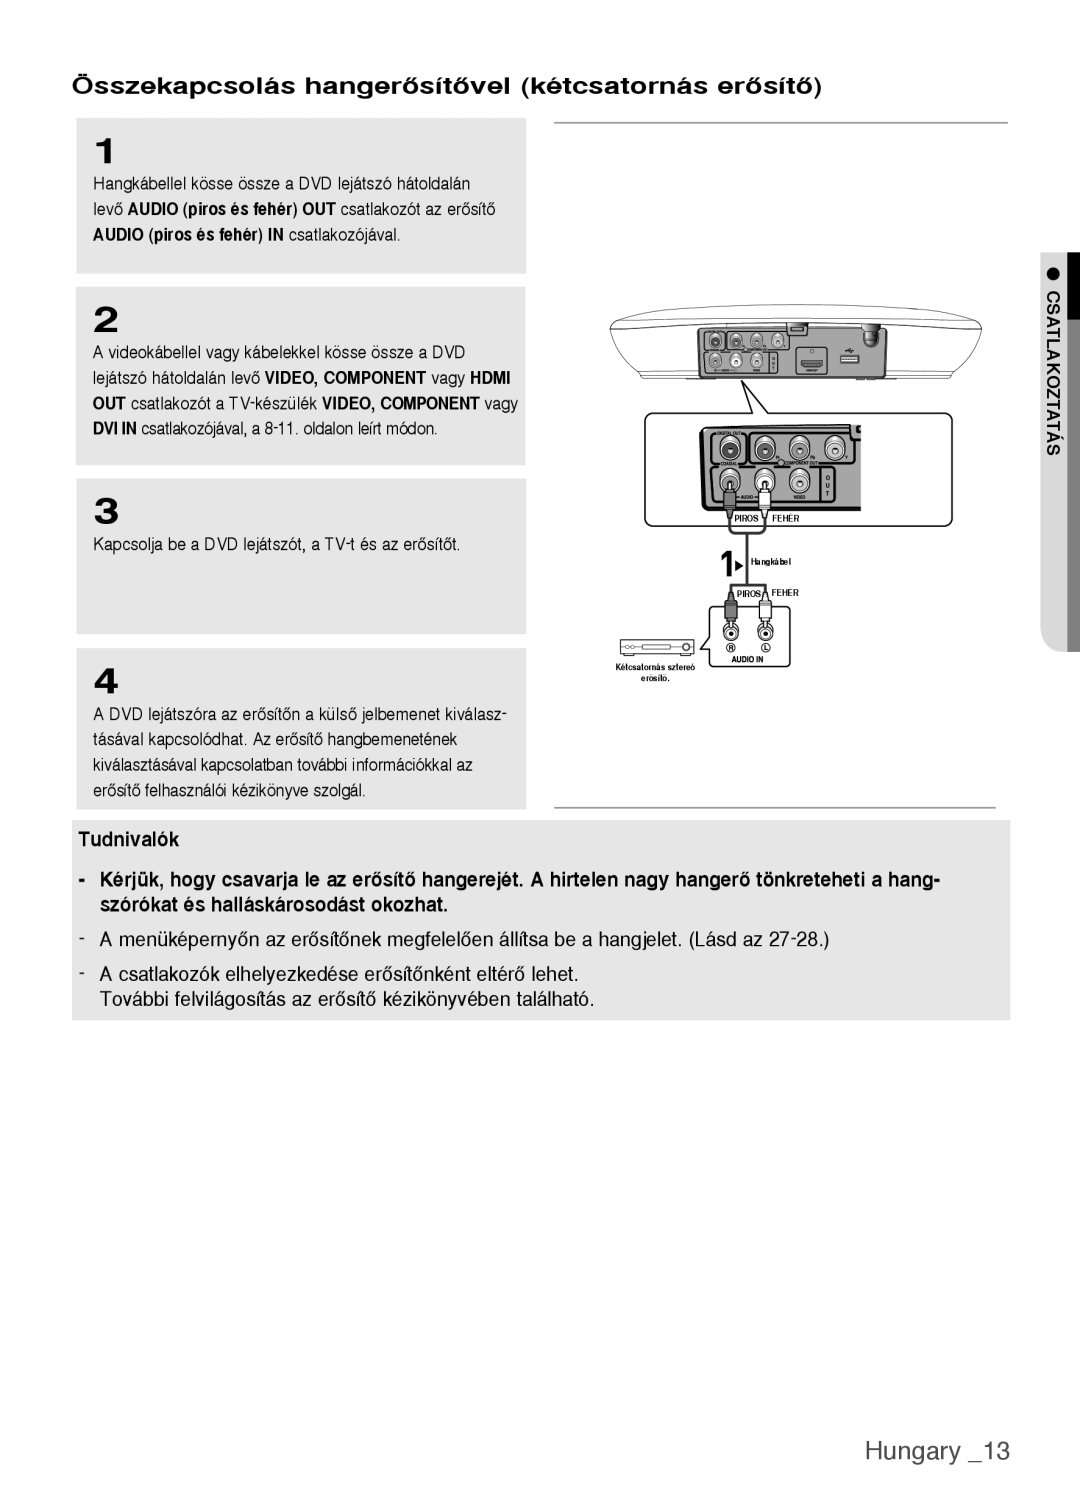 Samsung DVD-H1080W/EDC, DVD-H1080/EDC manual Hungary, Összekapcsolás hangerŒsítŒvel kétcsatornás erŒsítŒ, Tudnivalók 